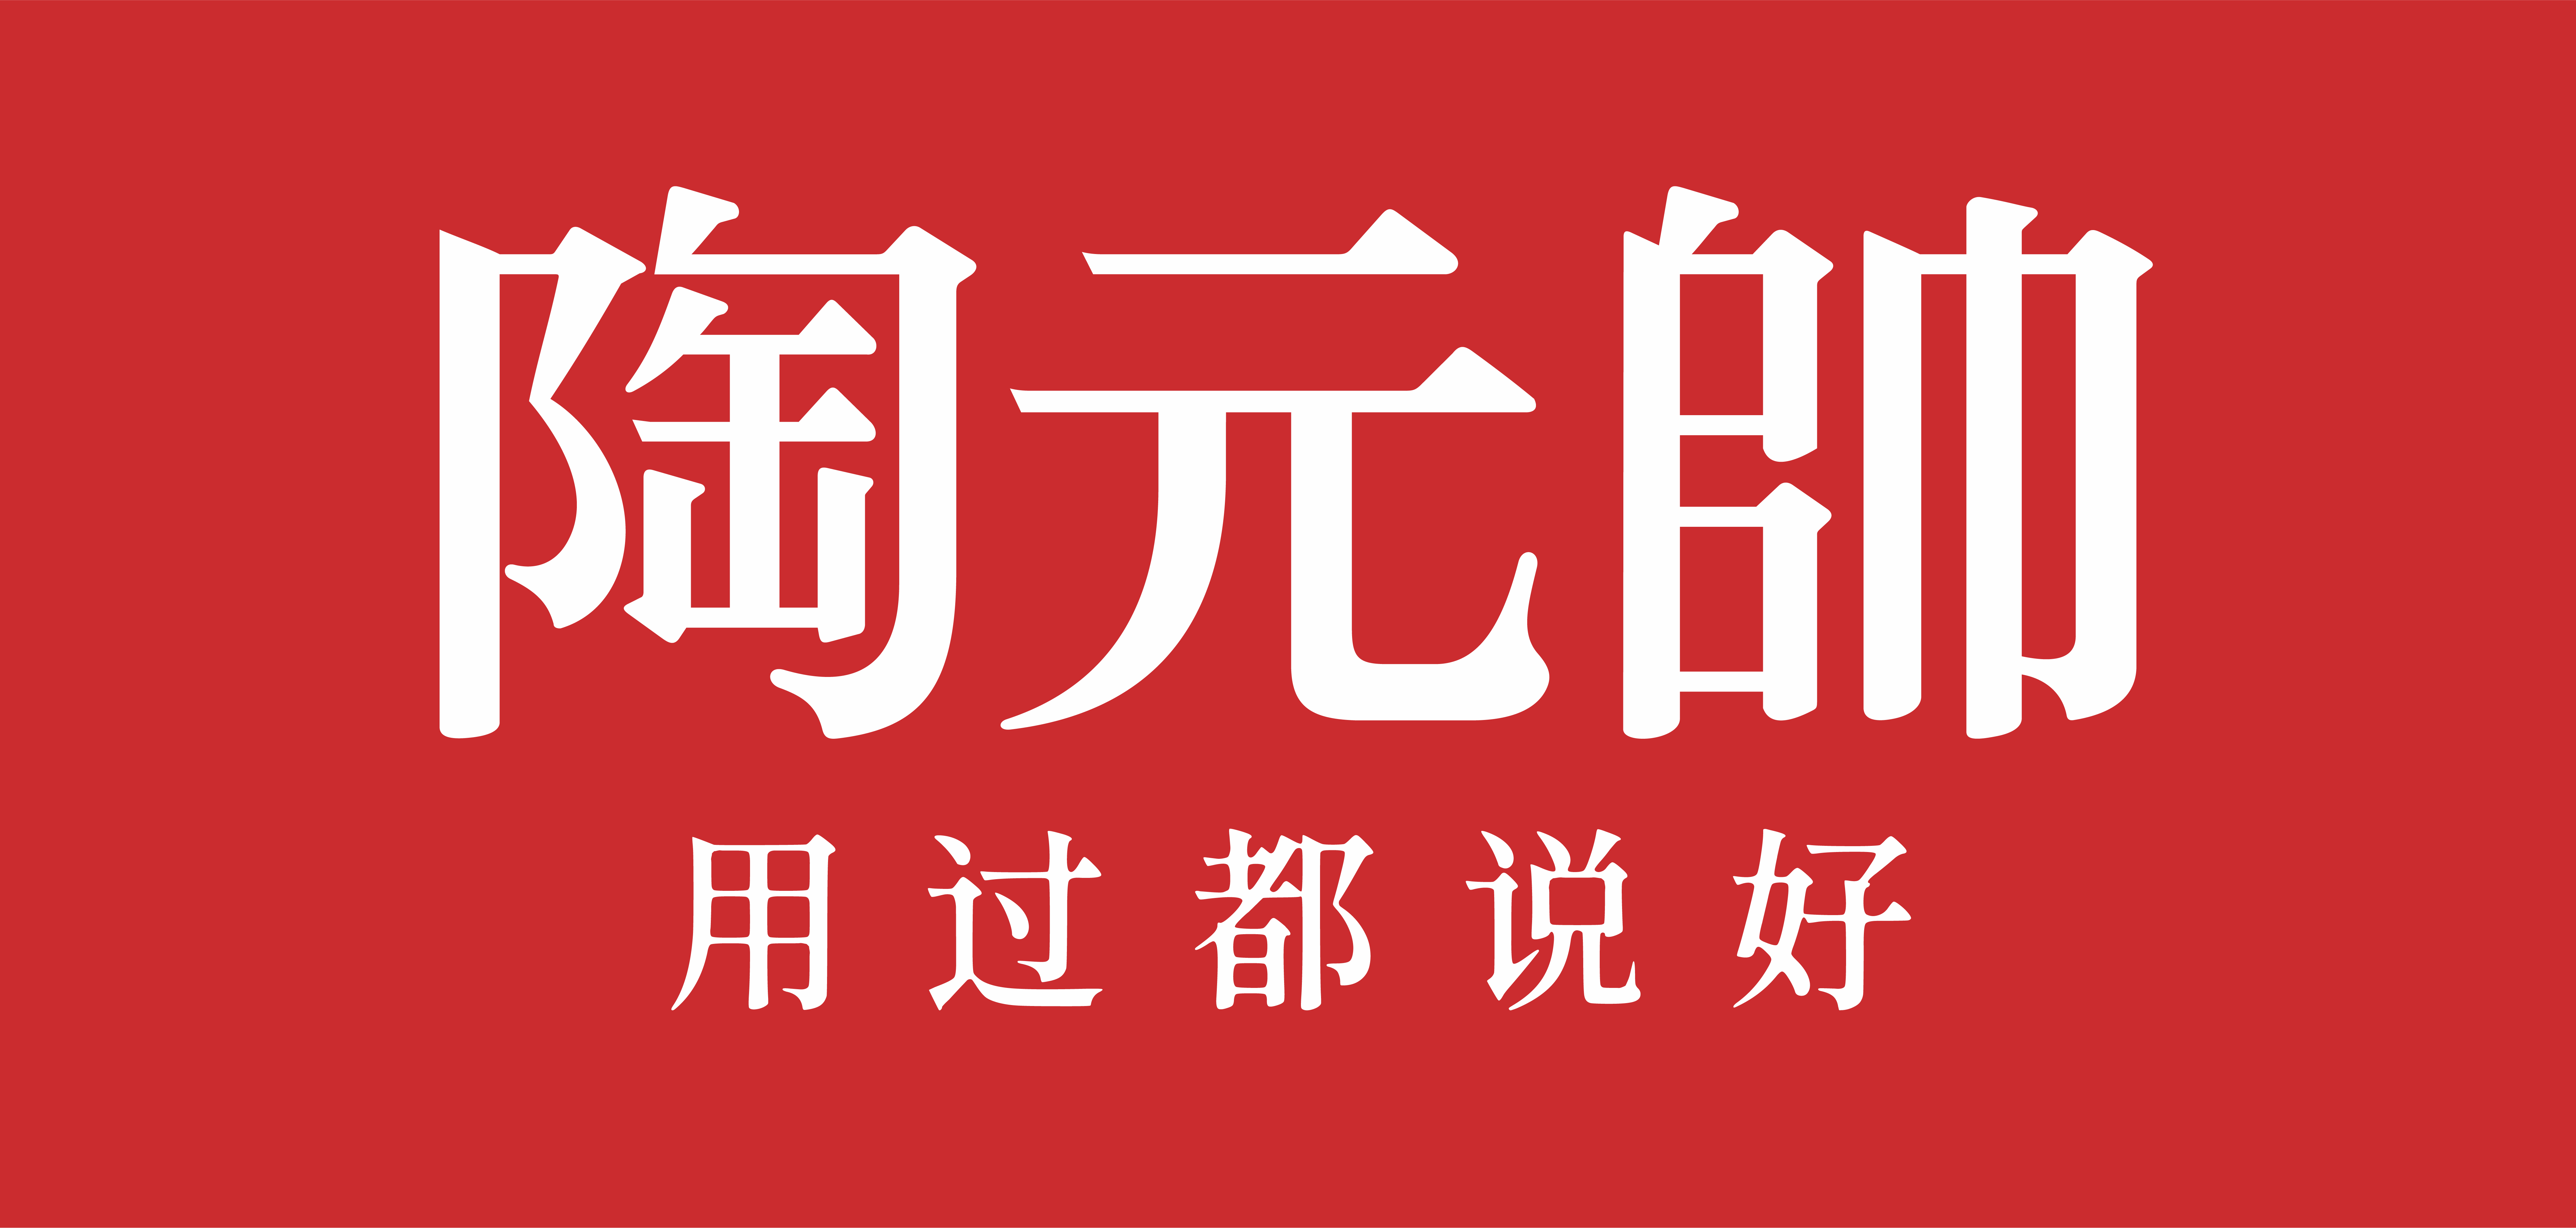 陶元帅国内精品久久logo